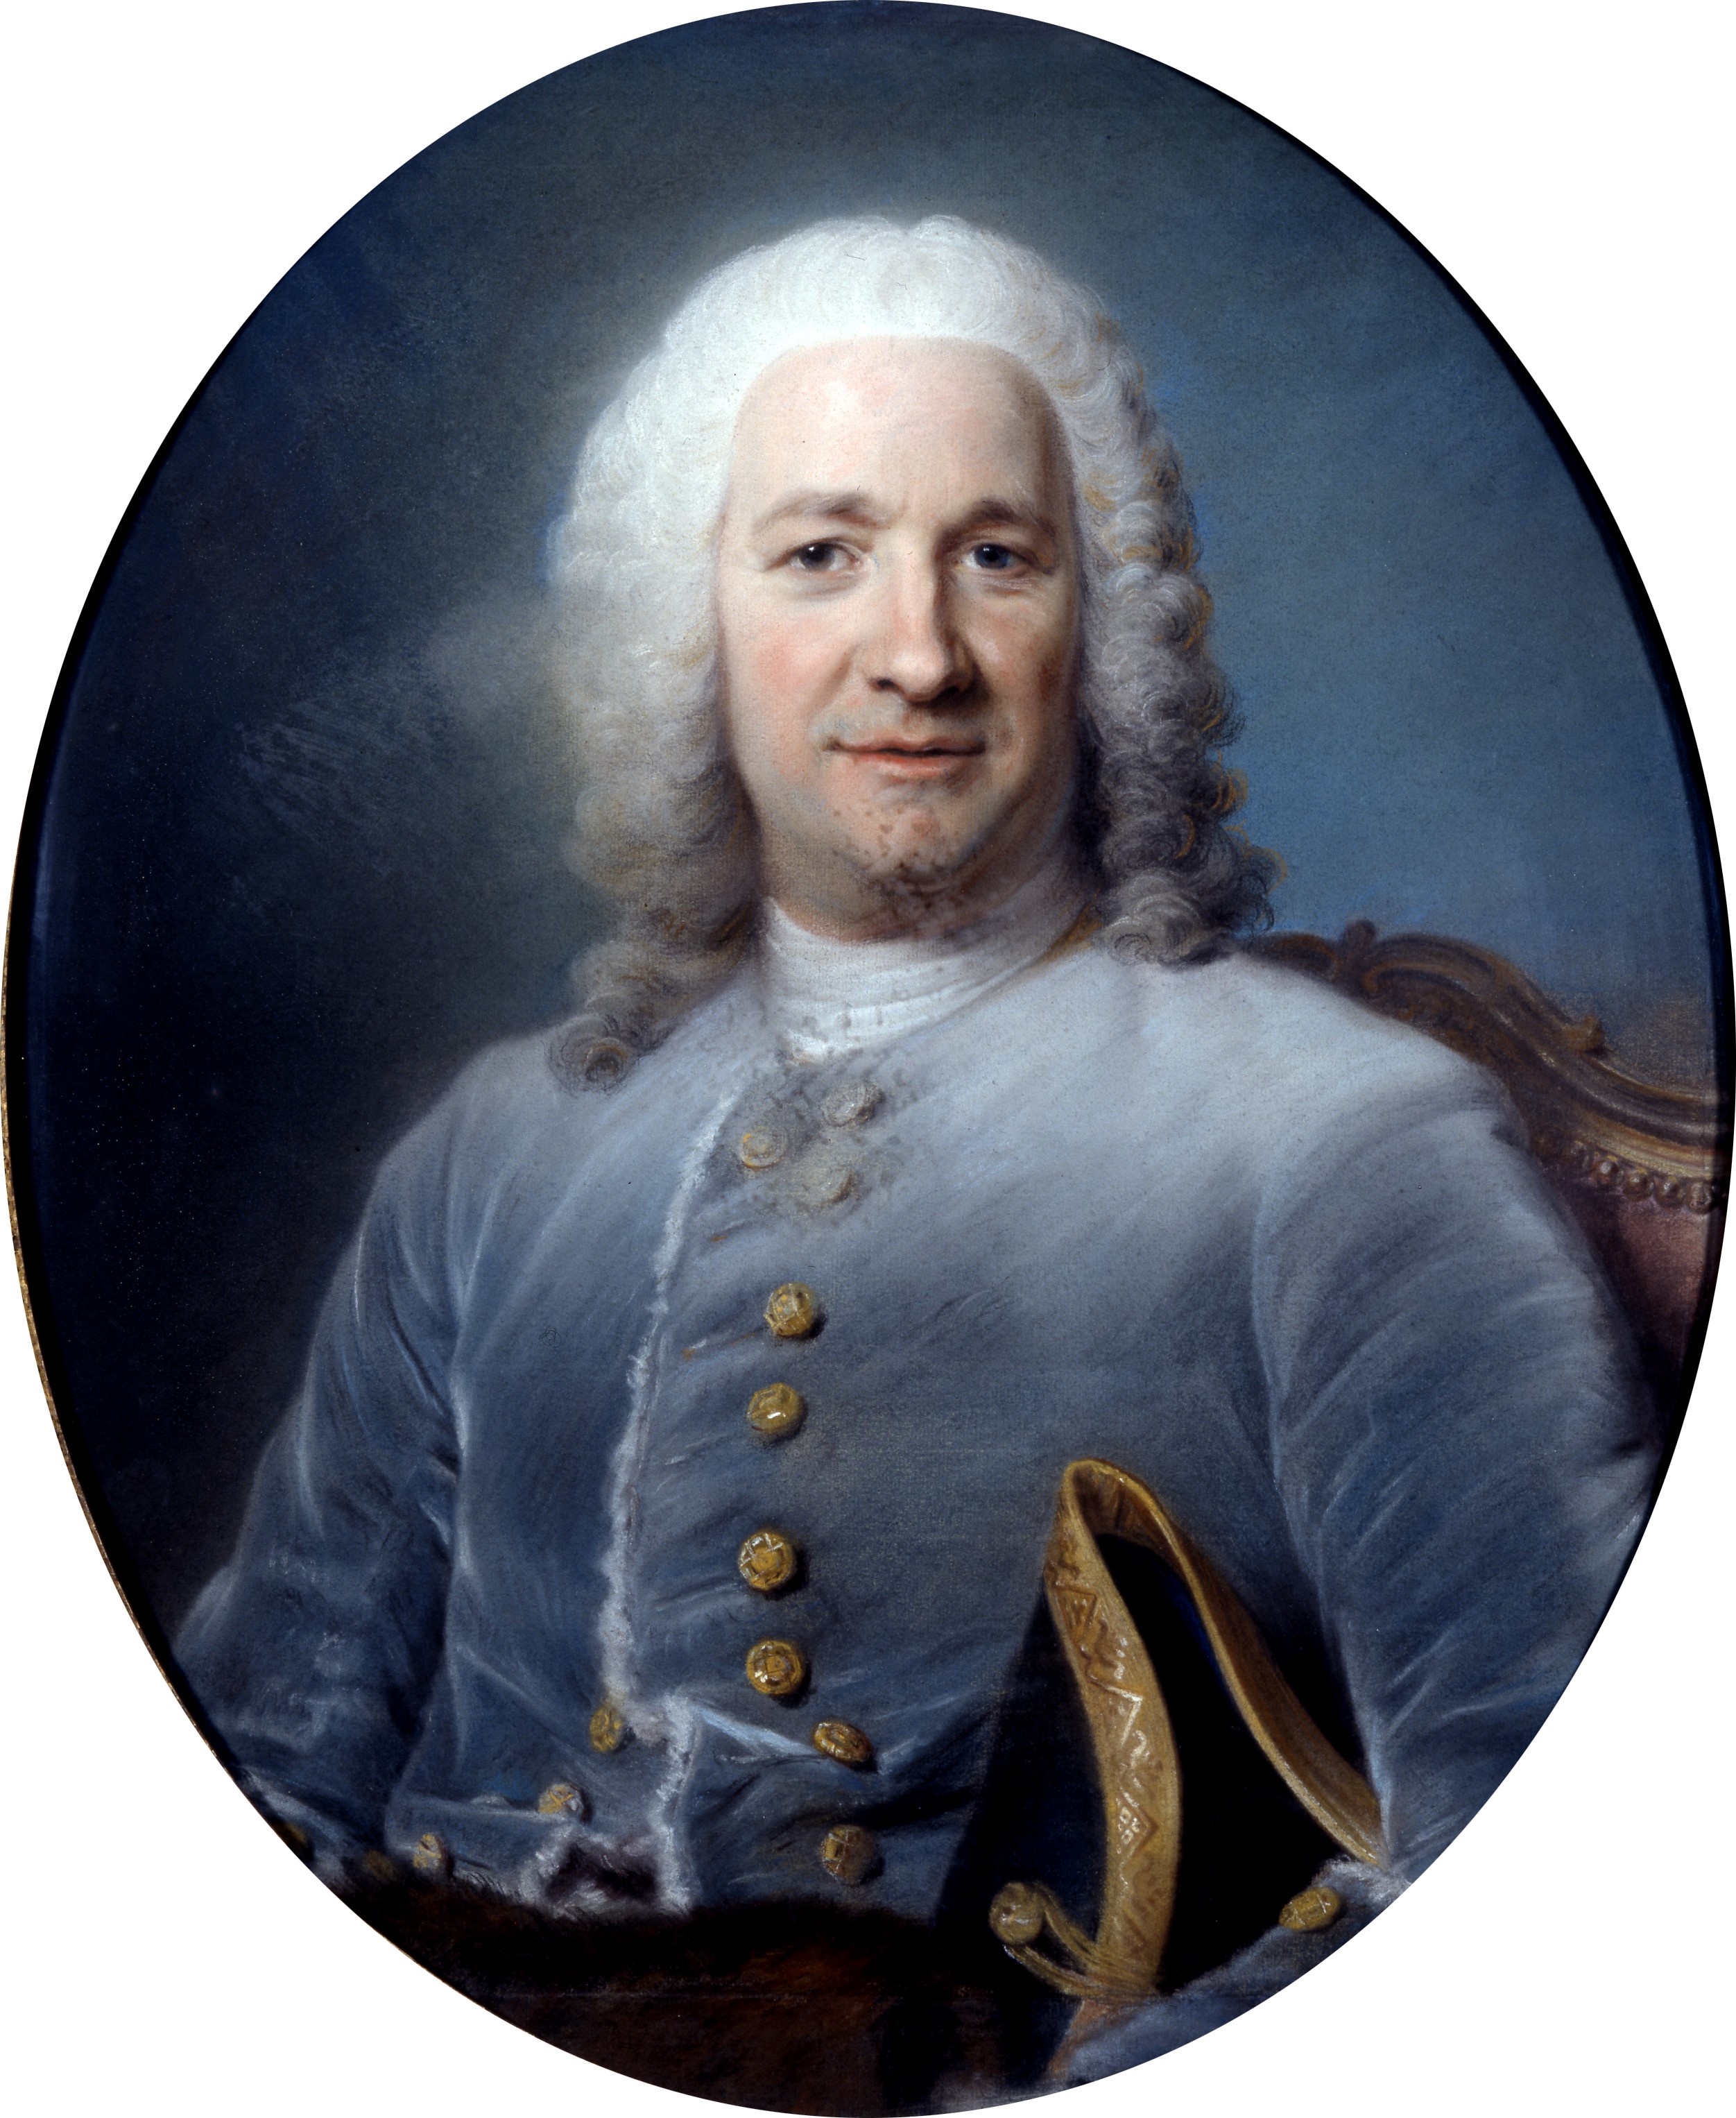 La marquise de Pompadour, 1755, 131×179 cm by Maurice Quentin de La Tour:  History, Analysis & Facts